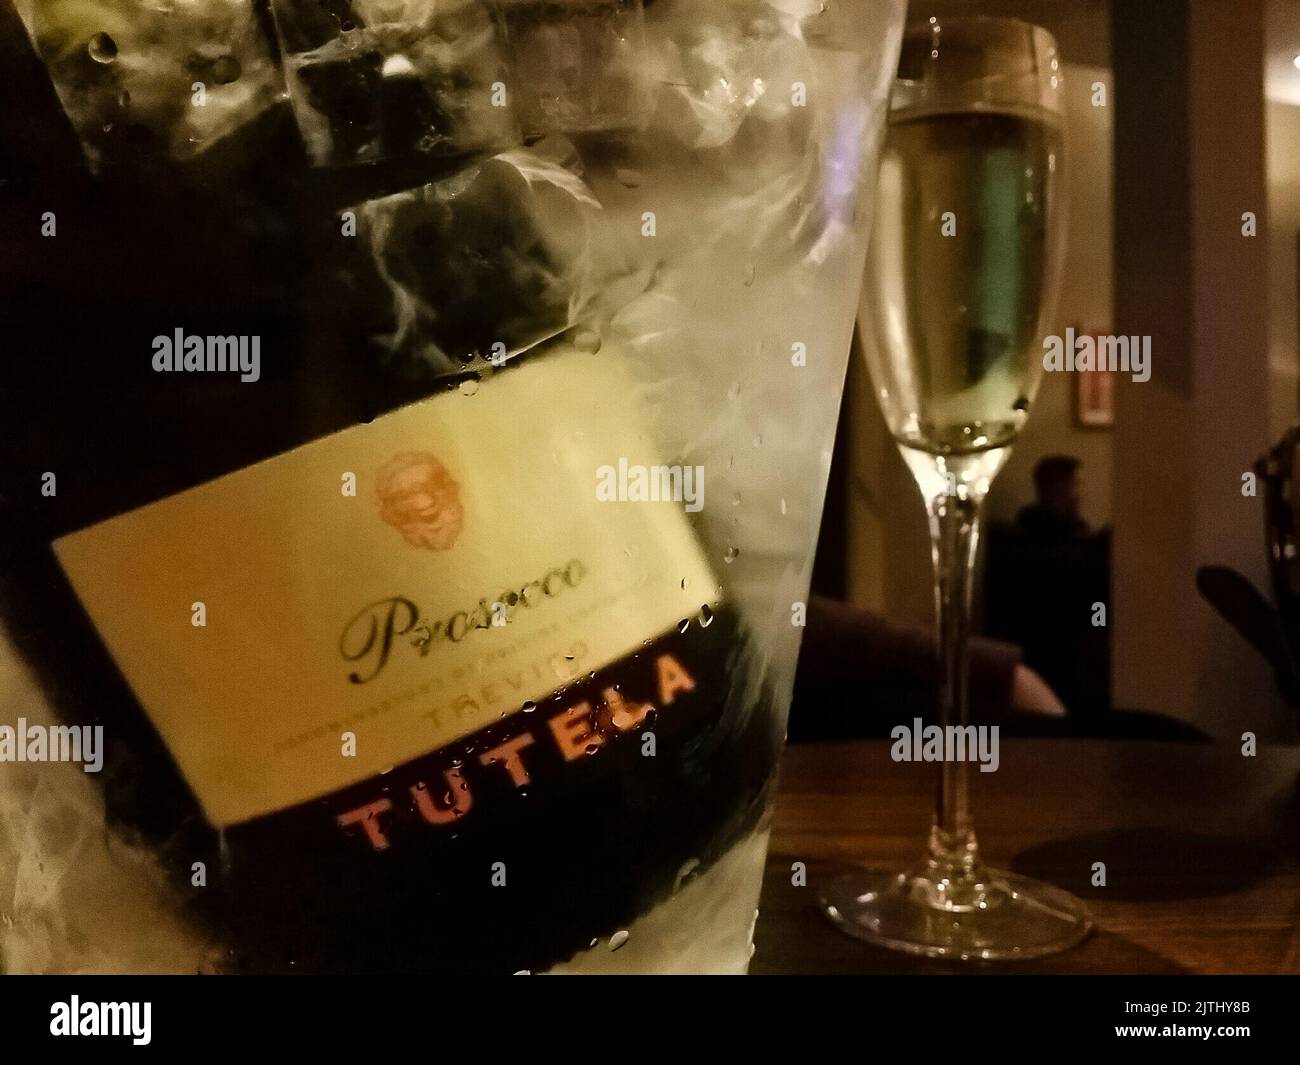 Eine Flasche Tutela Prosecco in einem Eimer Eis mit Sektgläsern in einem Hotelzimmer Stockfoto